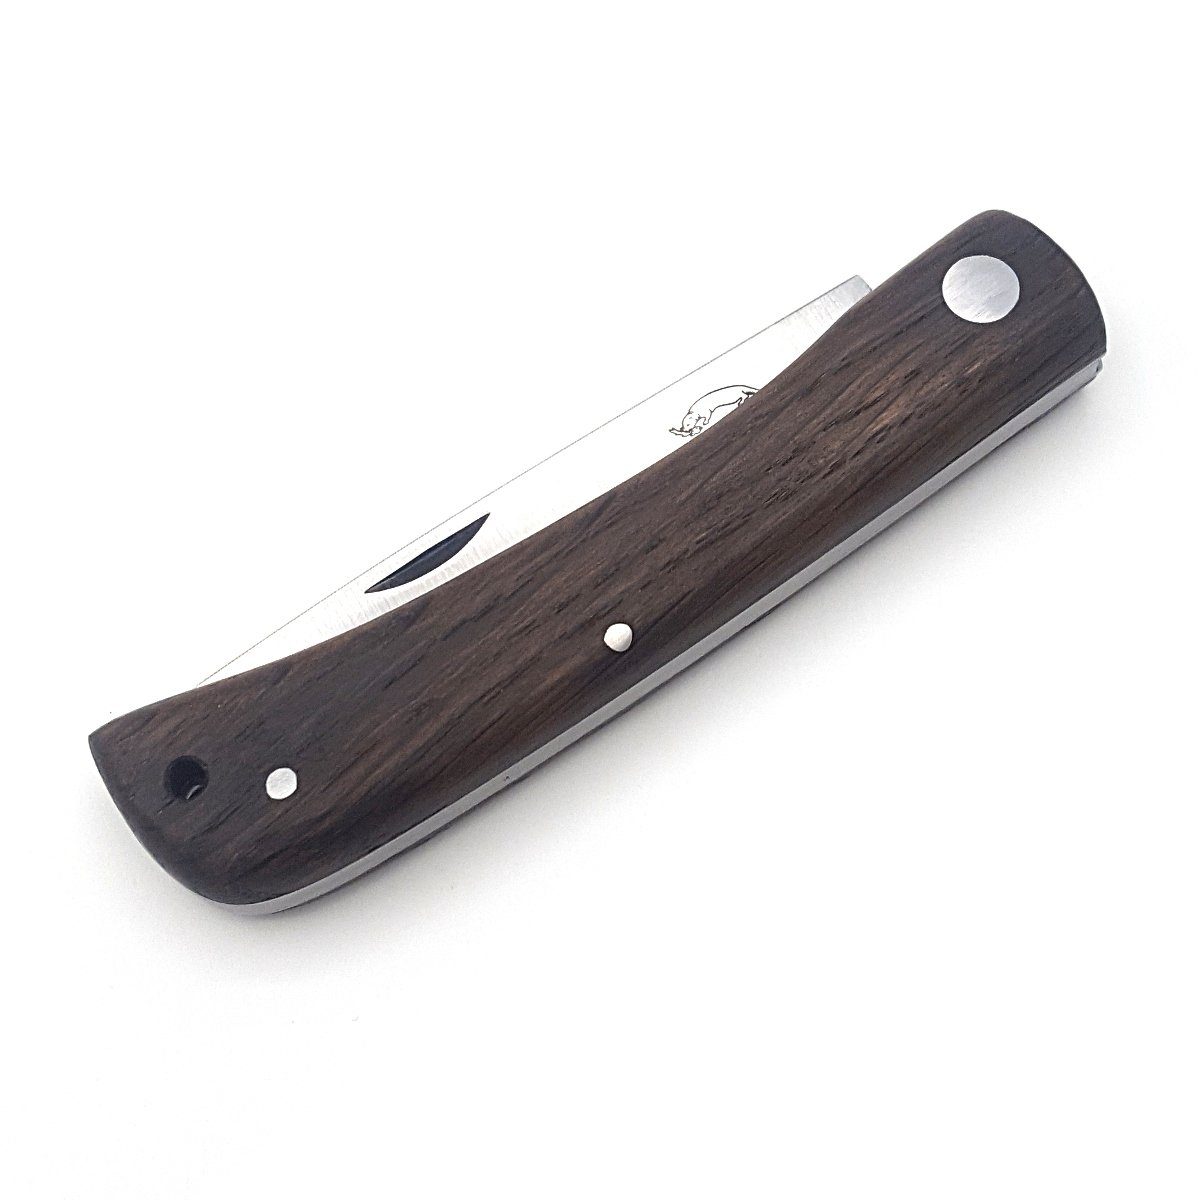 Otter Messer Taschenmesser Hippekniep Slipjoint Räuchereiche Carbonstahl, Klinge mit Lederband, groß